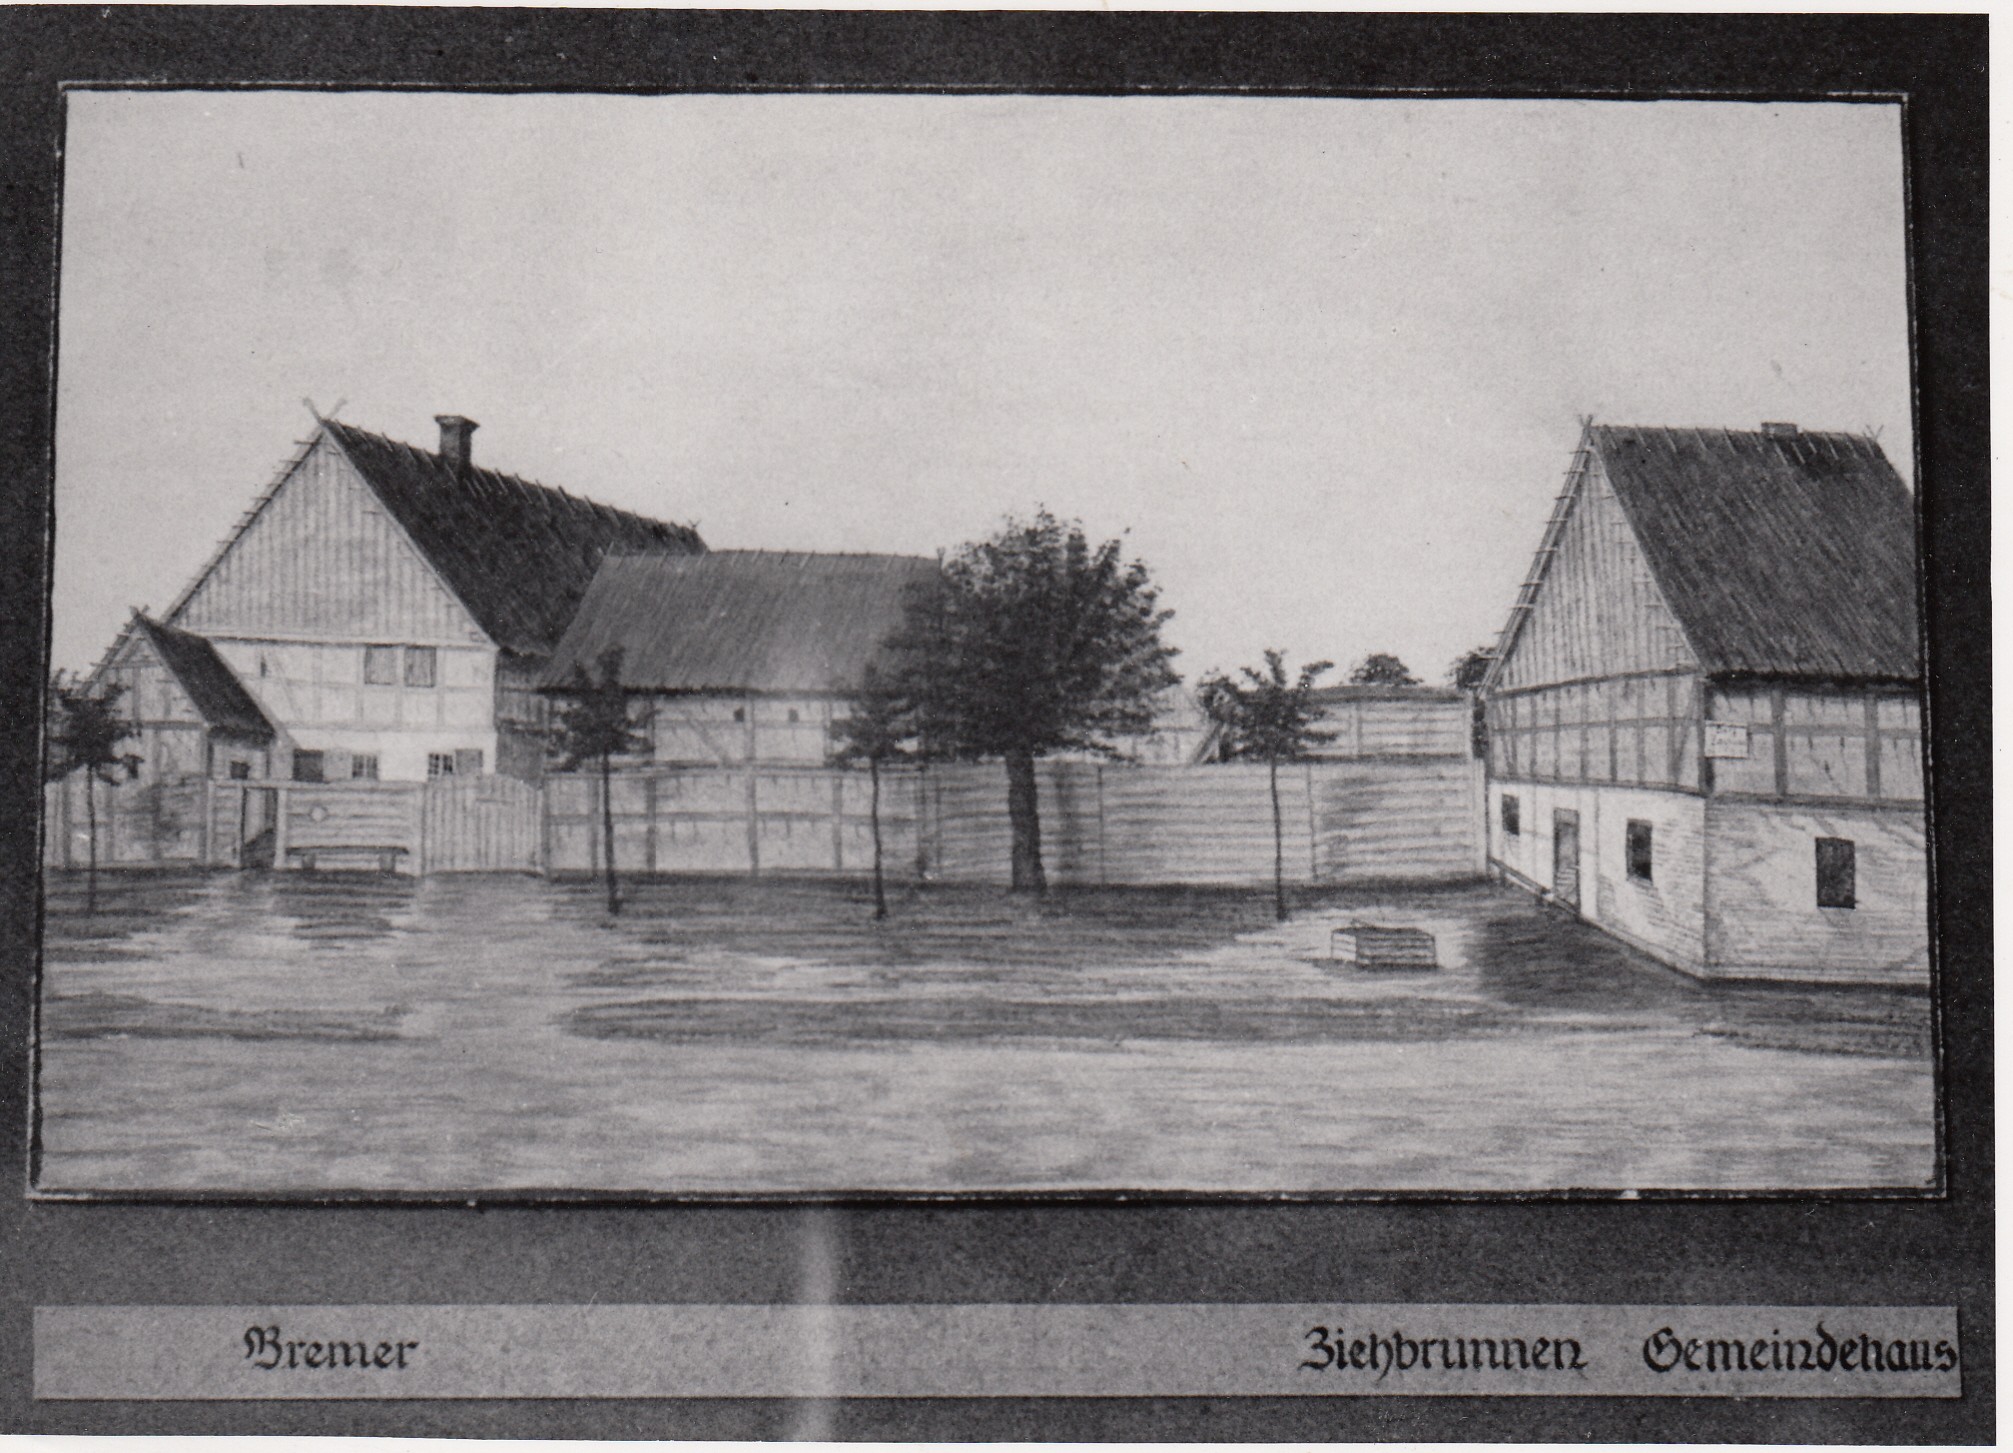 2501: Ansicht „Bremer, Ziehbrunnen, Gemeindehaus“ (Museumsverband des Landes Brandenburg e.V. CC BY-NC-SA)